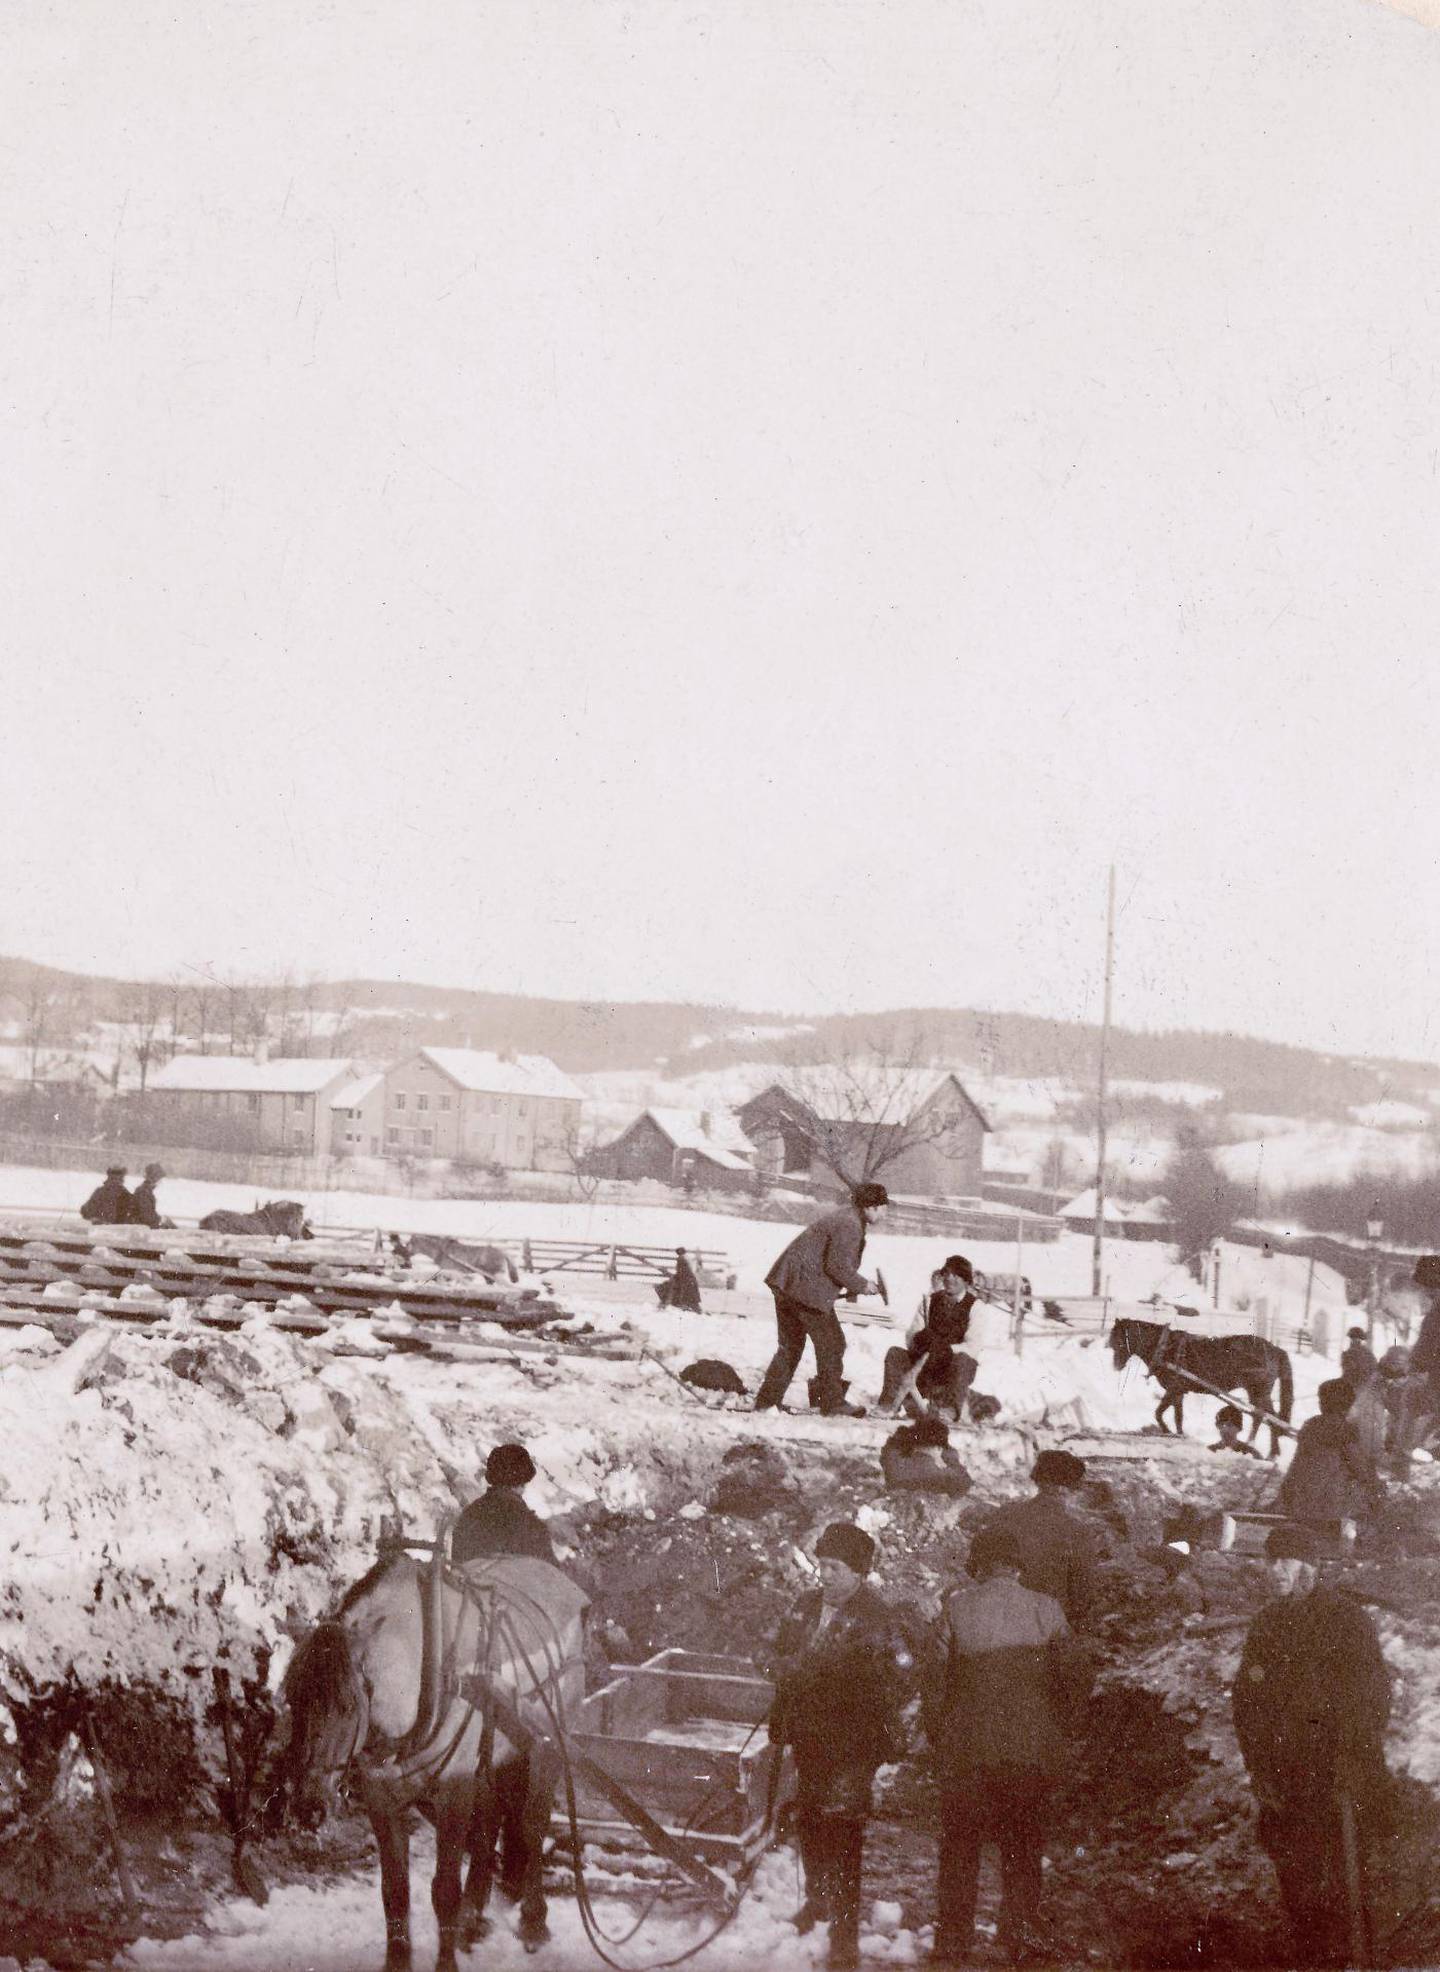 Veiarbeid ved Geitmyra gård og krysset Tåsenveien/Kierschows gate cirka 1896.
Foto: Oscar Hvalbye/ Oslo museum